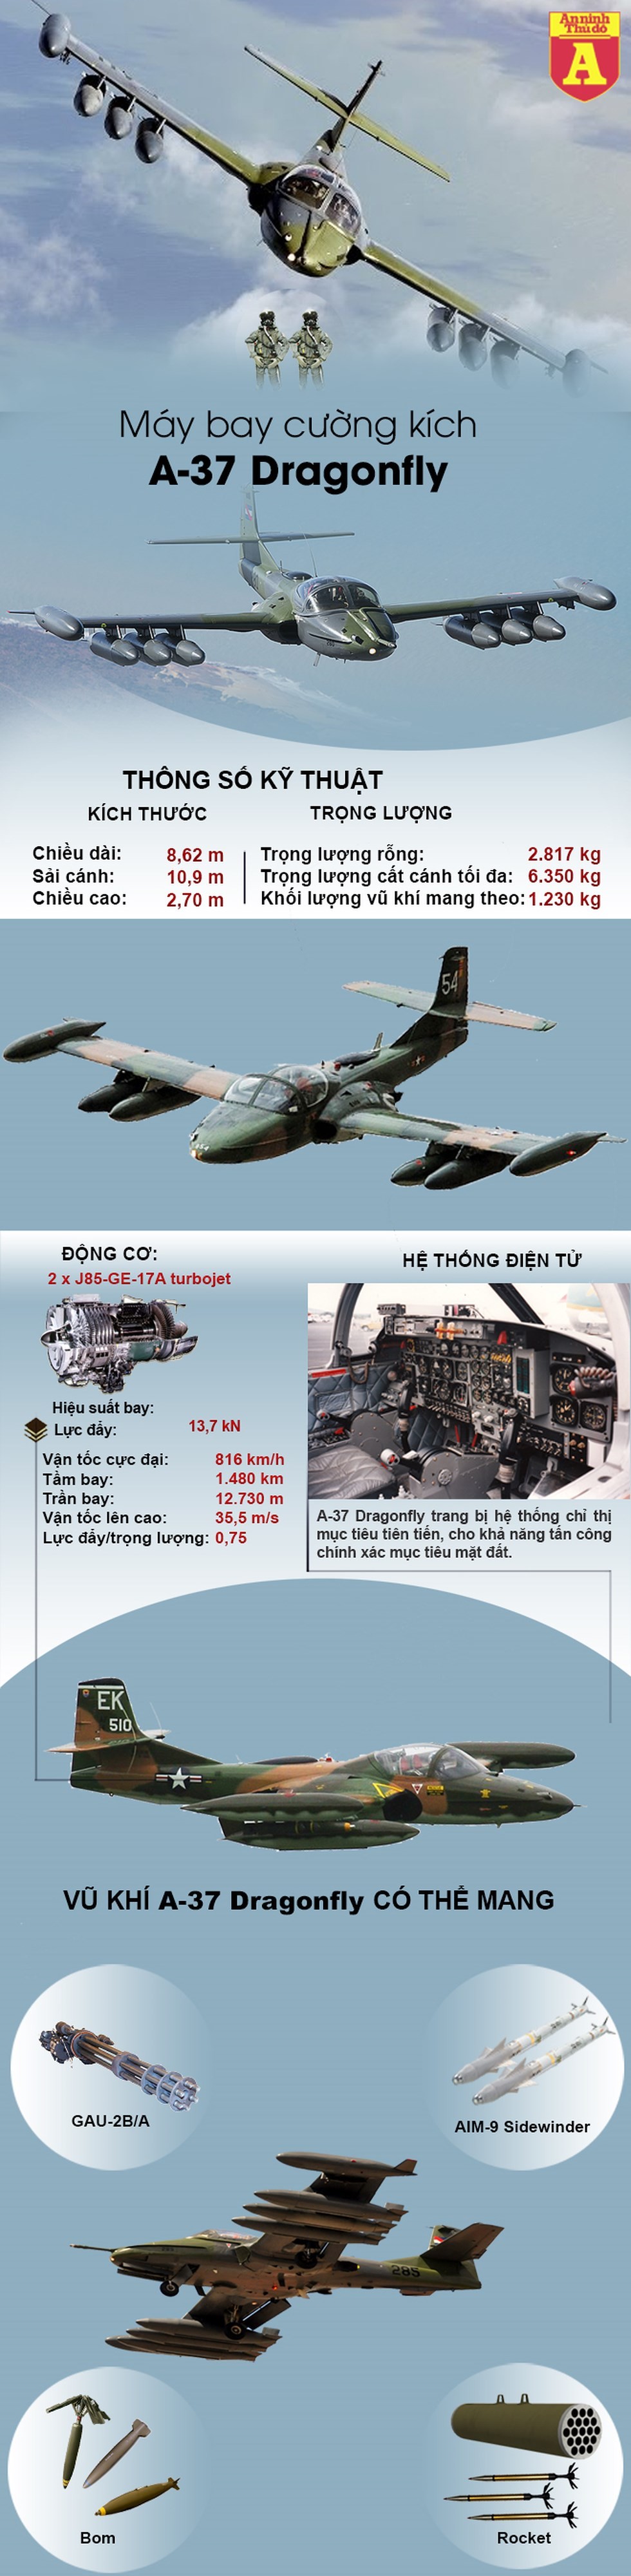 [Info] Bất ngờ xuất xứ của cường kích đầu tiên trong biên chế không quân Việt Nam ảnh 2